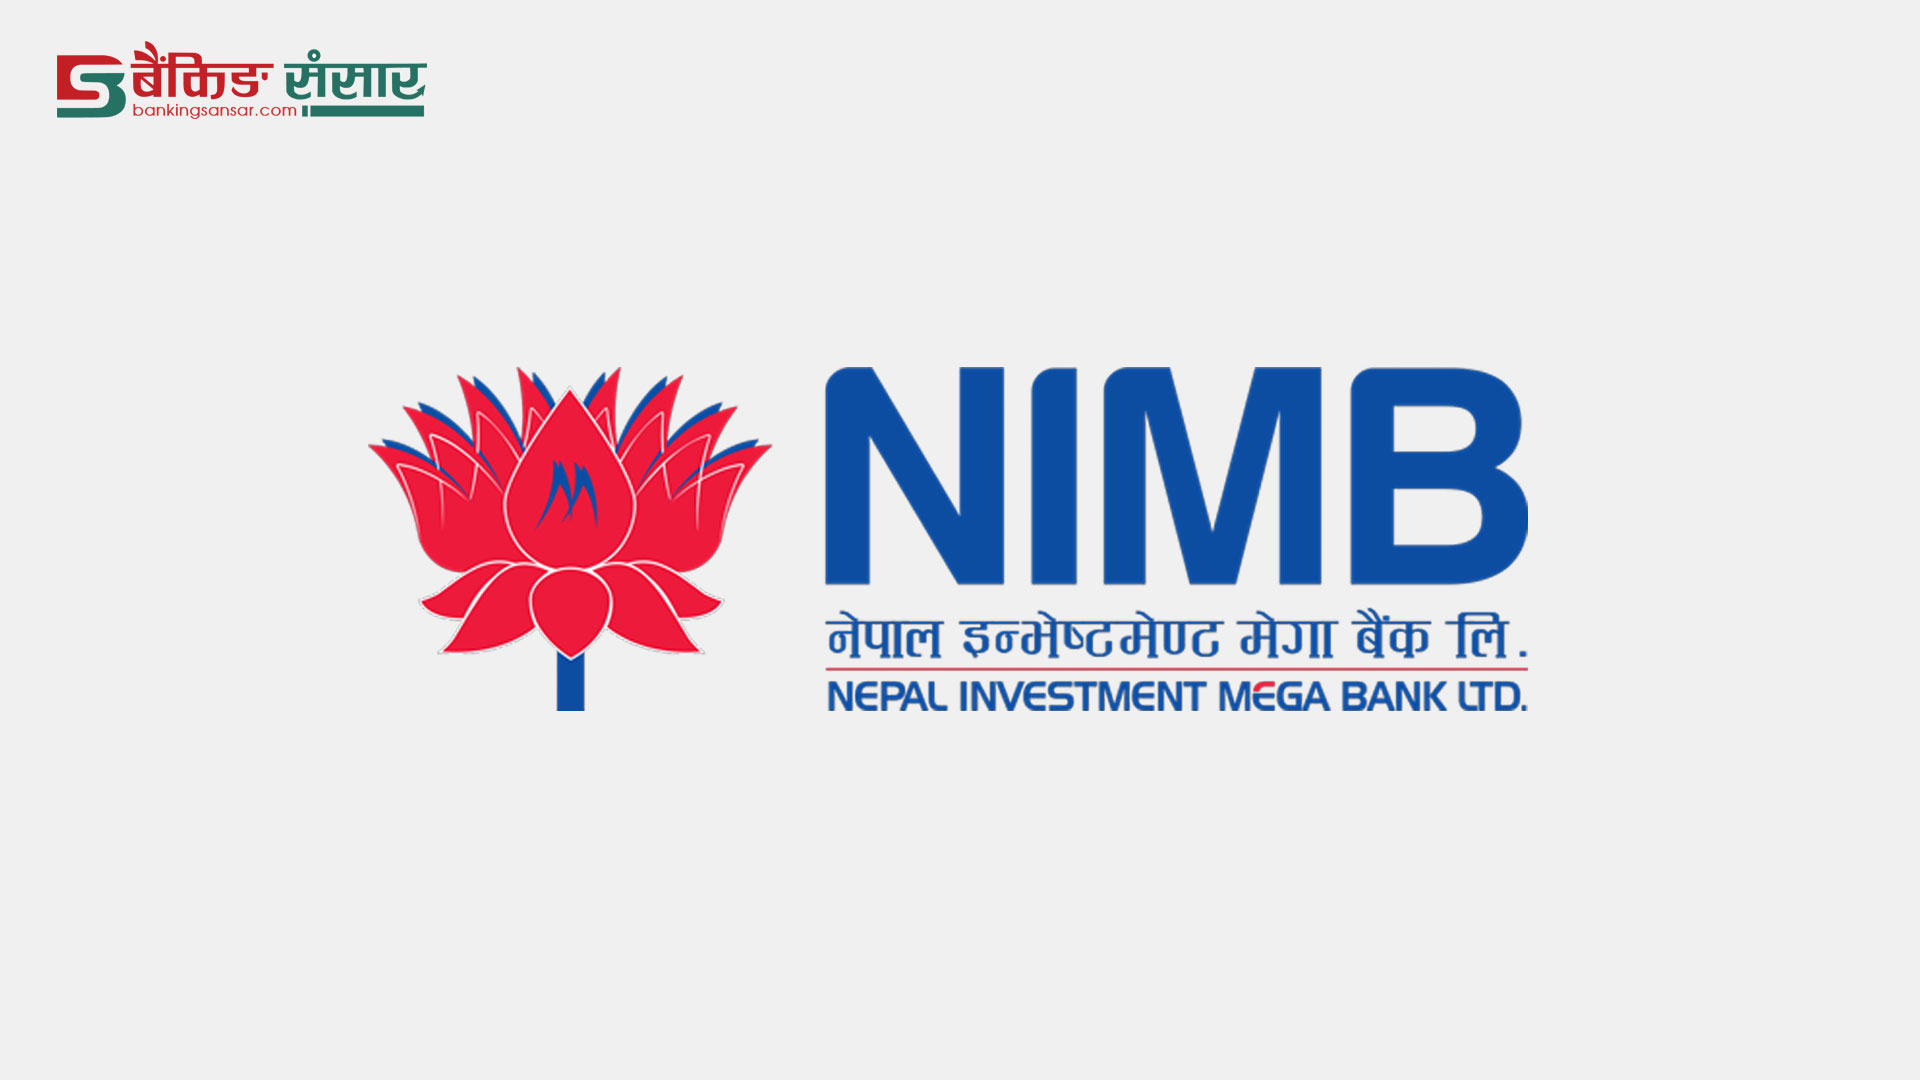 नेपाल इन्भेष्टमेण्ट मेगा बैंकको शेयर बिक्रीमा